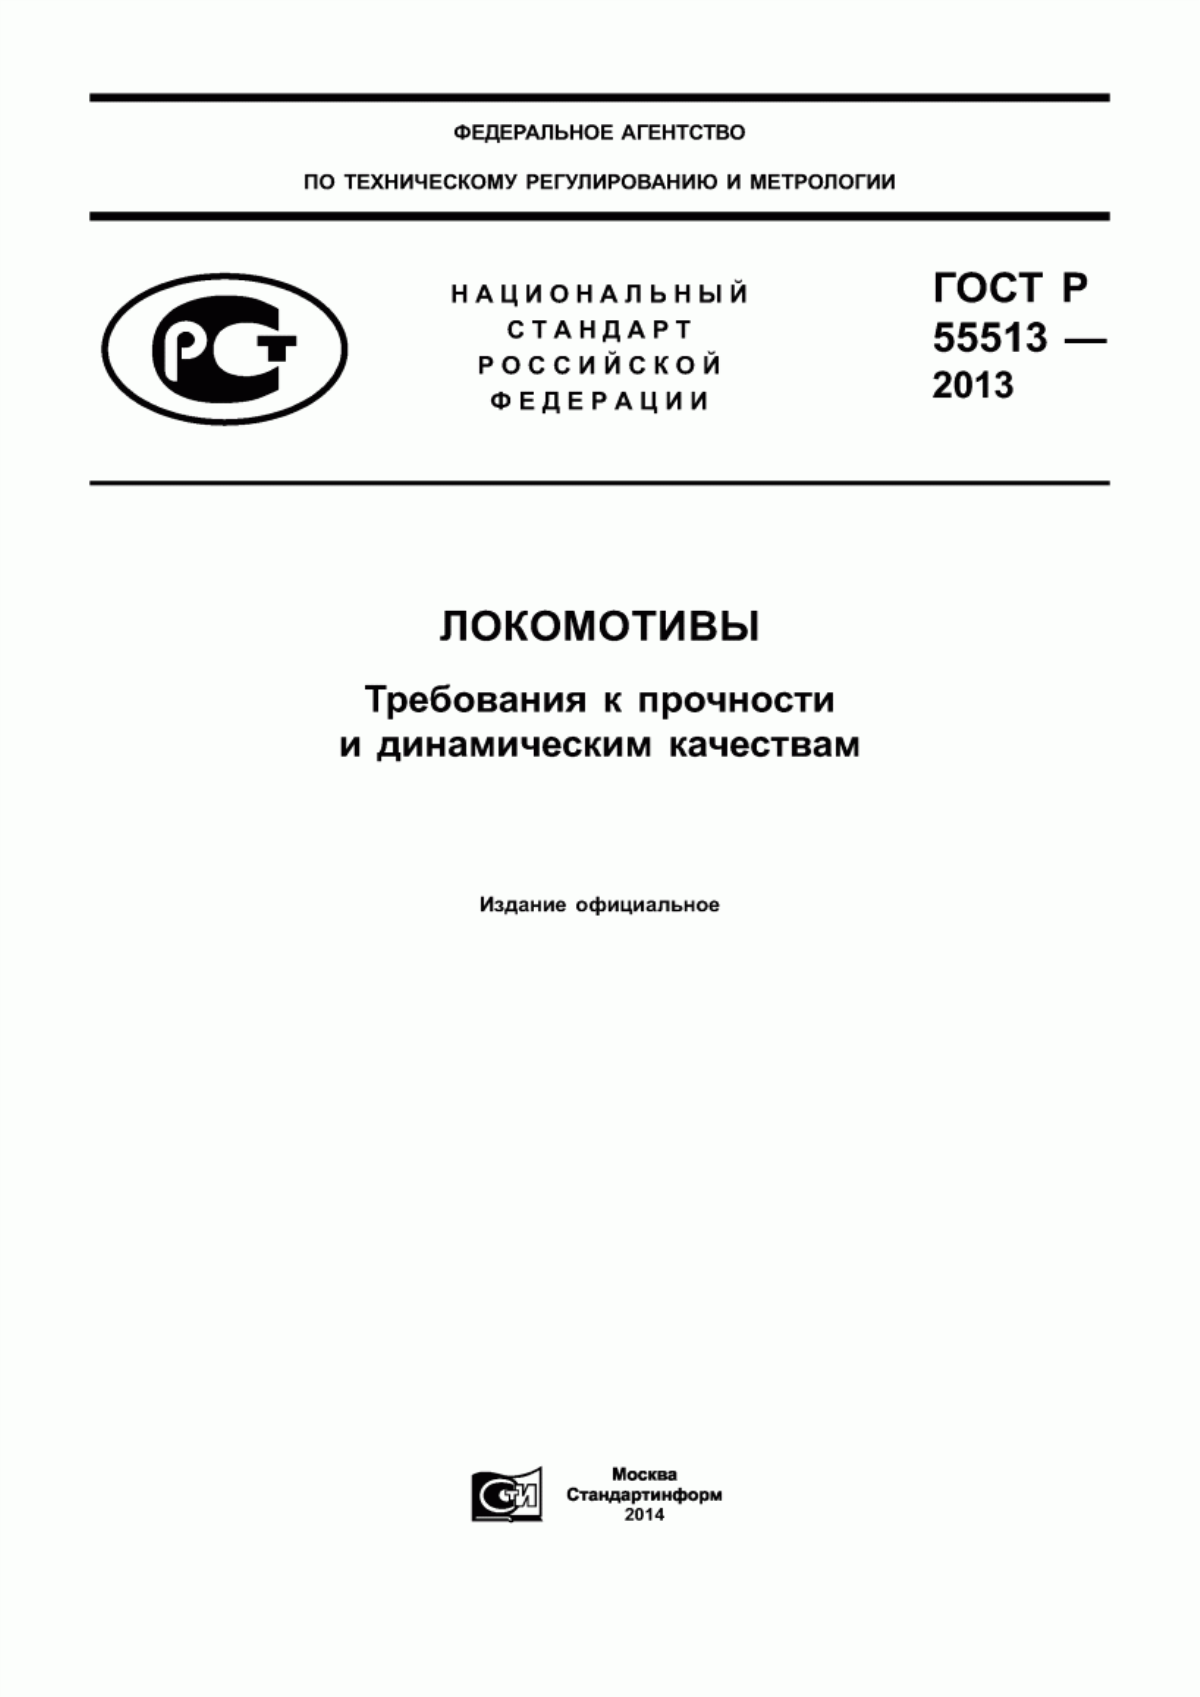 ГОСТ Р 55513-2013 Локомотивы. Требования к прочности и динамическим качествам